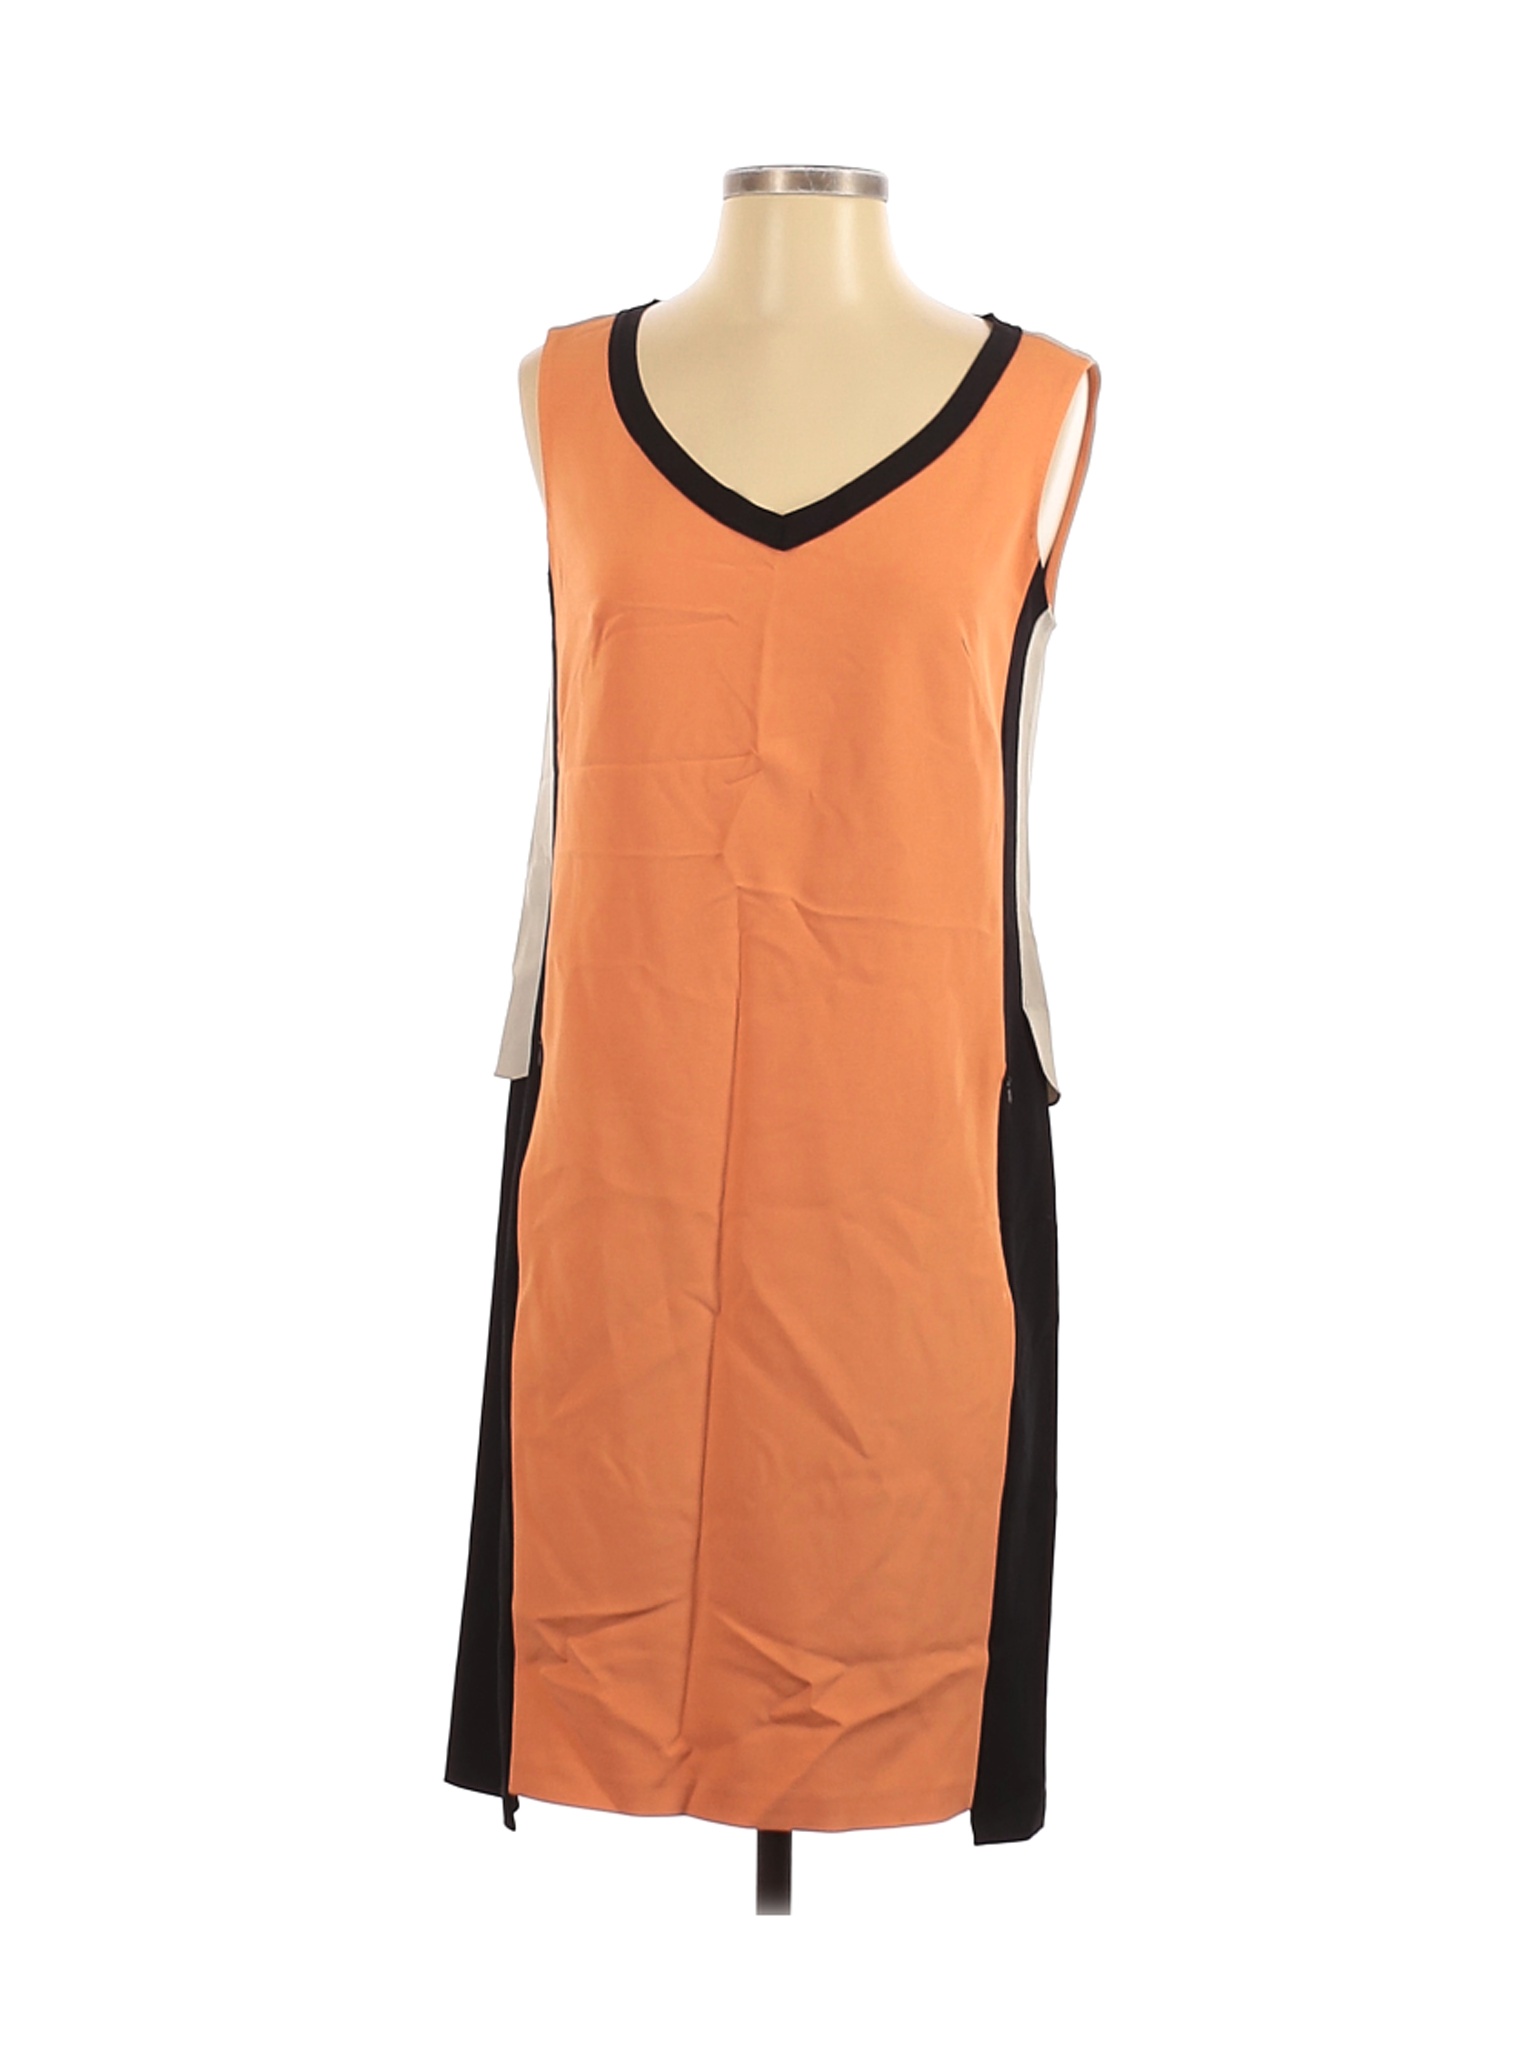 Elie Tahari Women Orange Casual Dress 4 | eBay